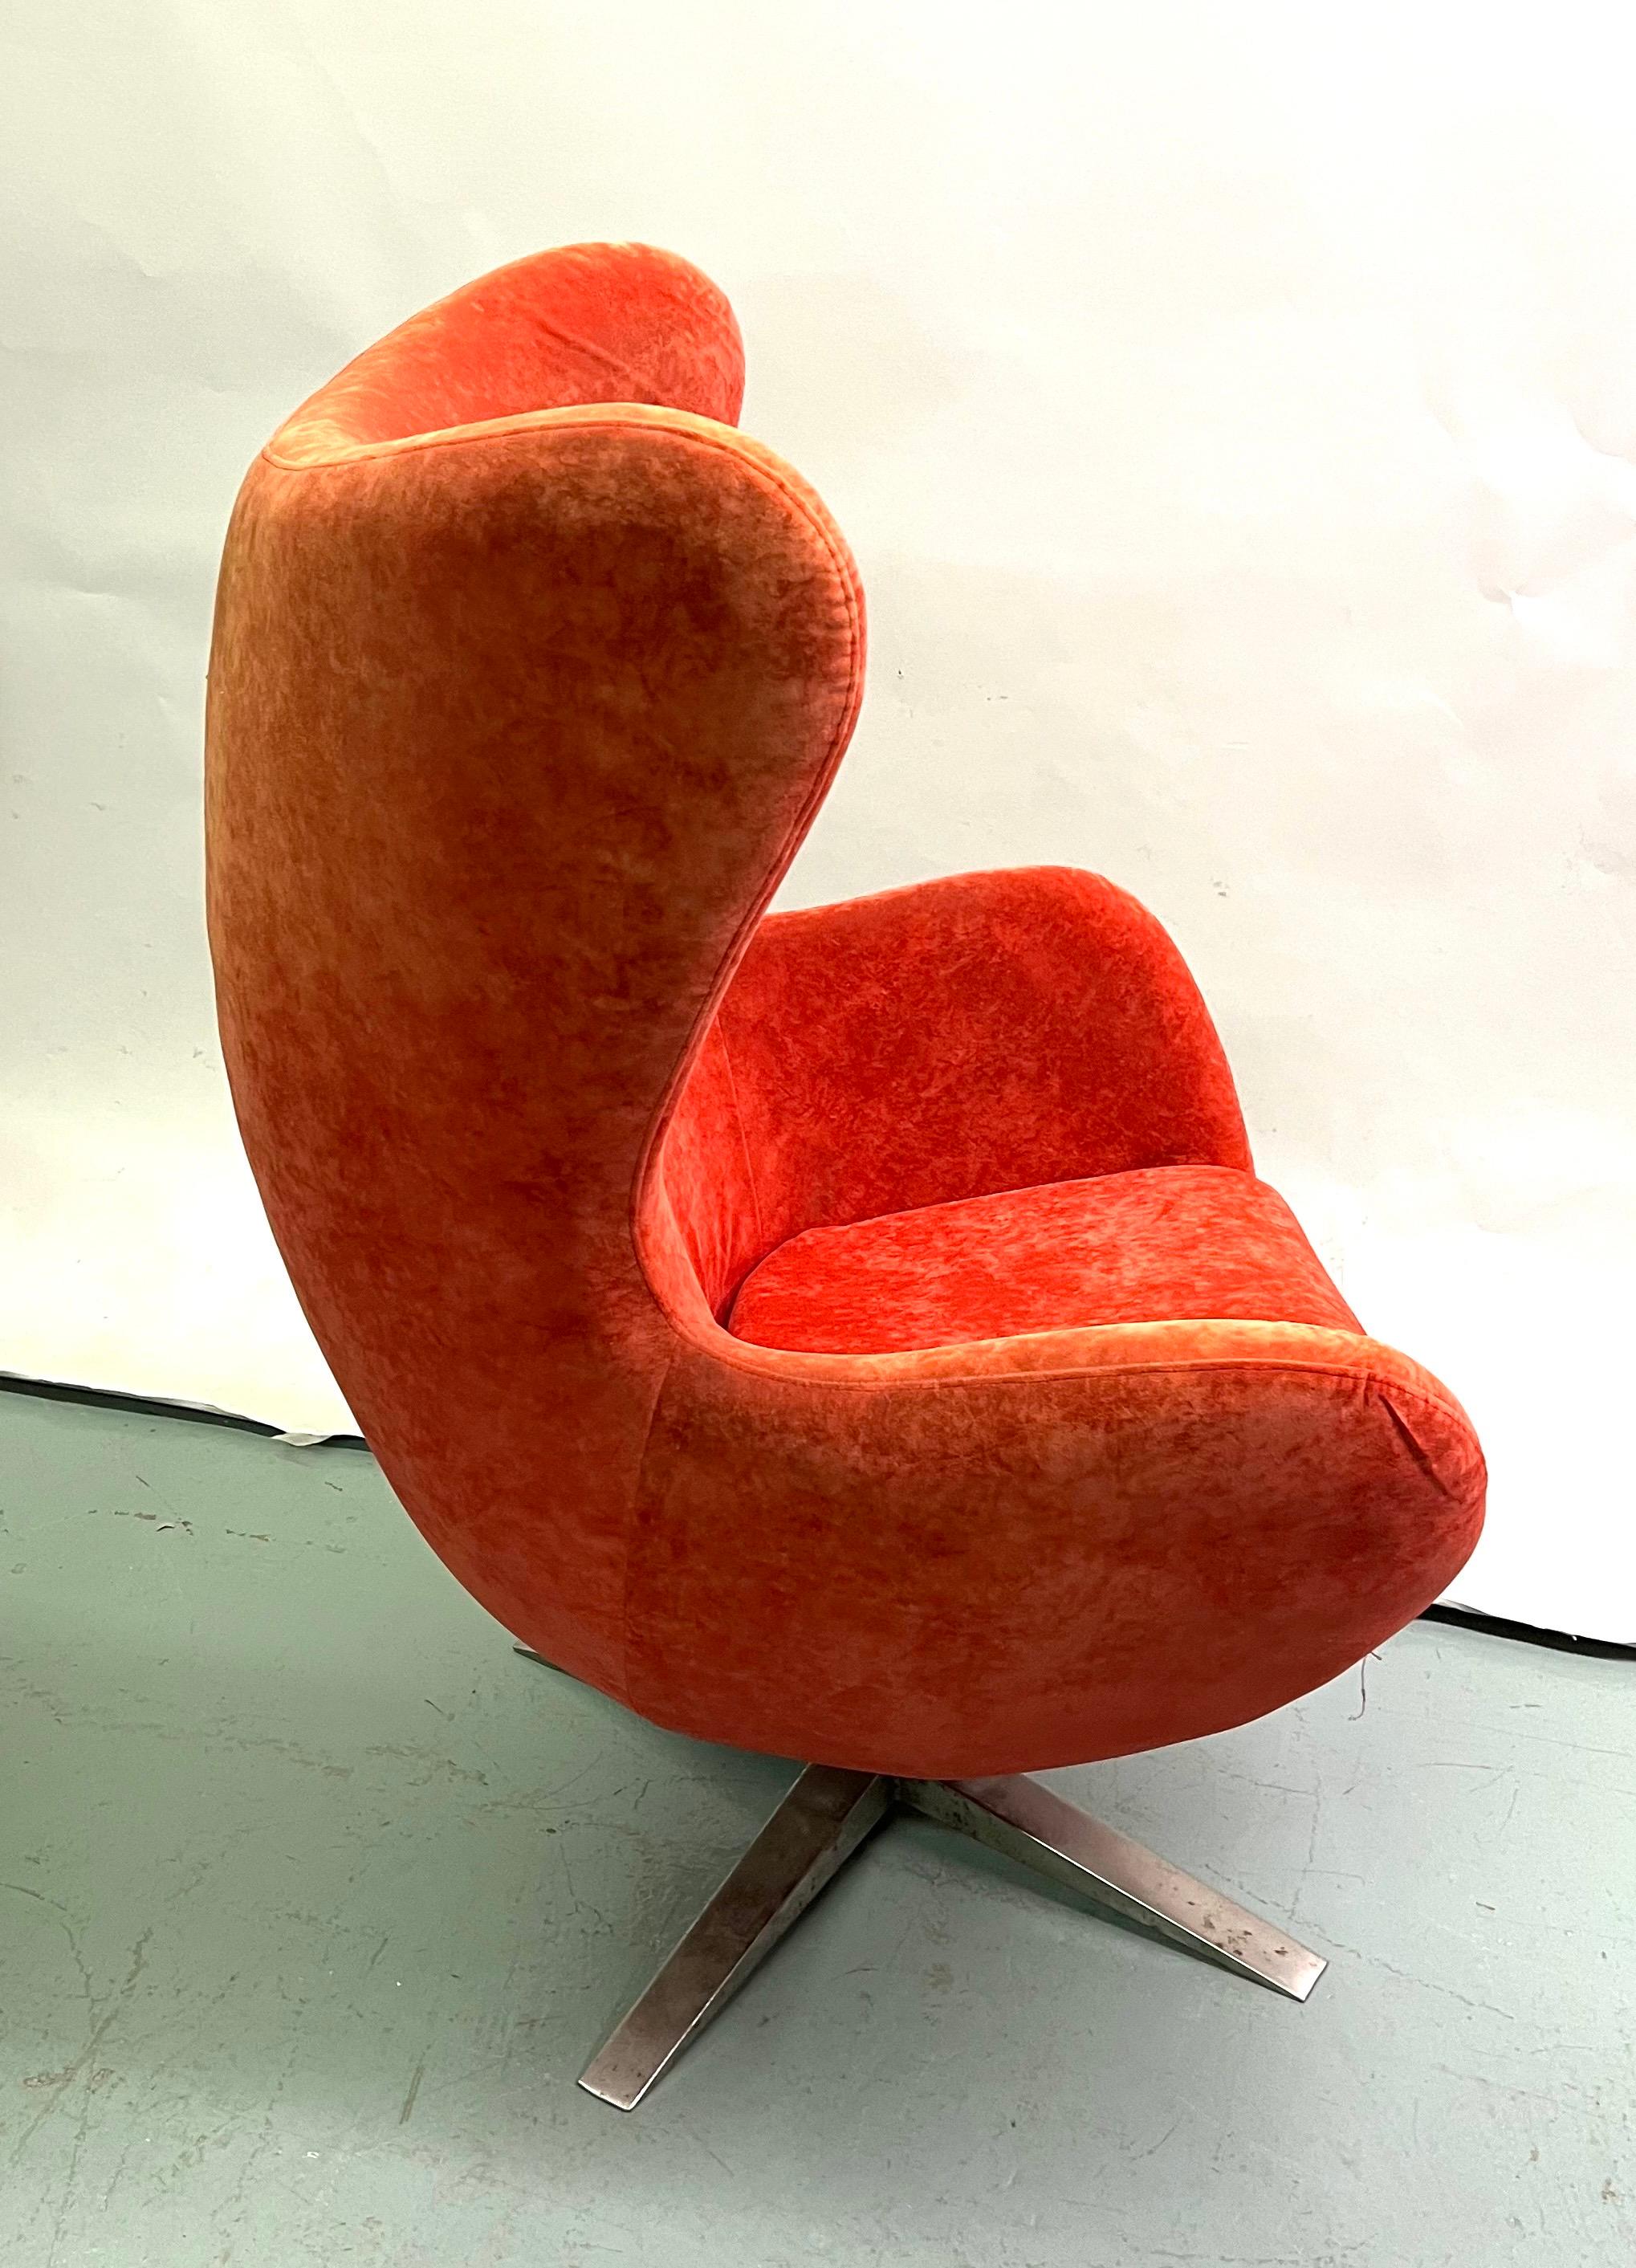 Rare ensemble de 3 fauteuils modernes organiques danois du milieu du siècle, attribués à Arne Jacobsen et Fritz Hansen. 2 des pièces sont en cuir d'origine des années 1960 et la 3ème pièce est en velours côtelé rouge orange brossé.  Les pièces ont